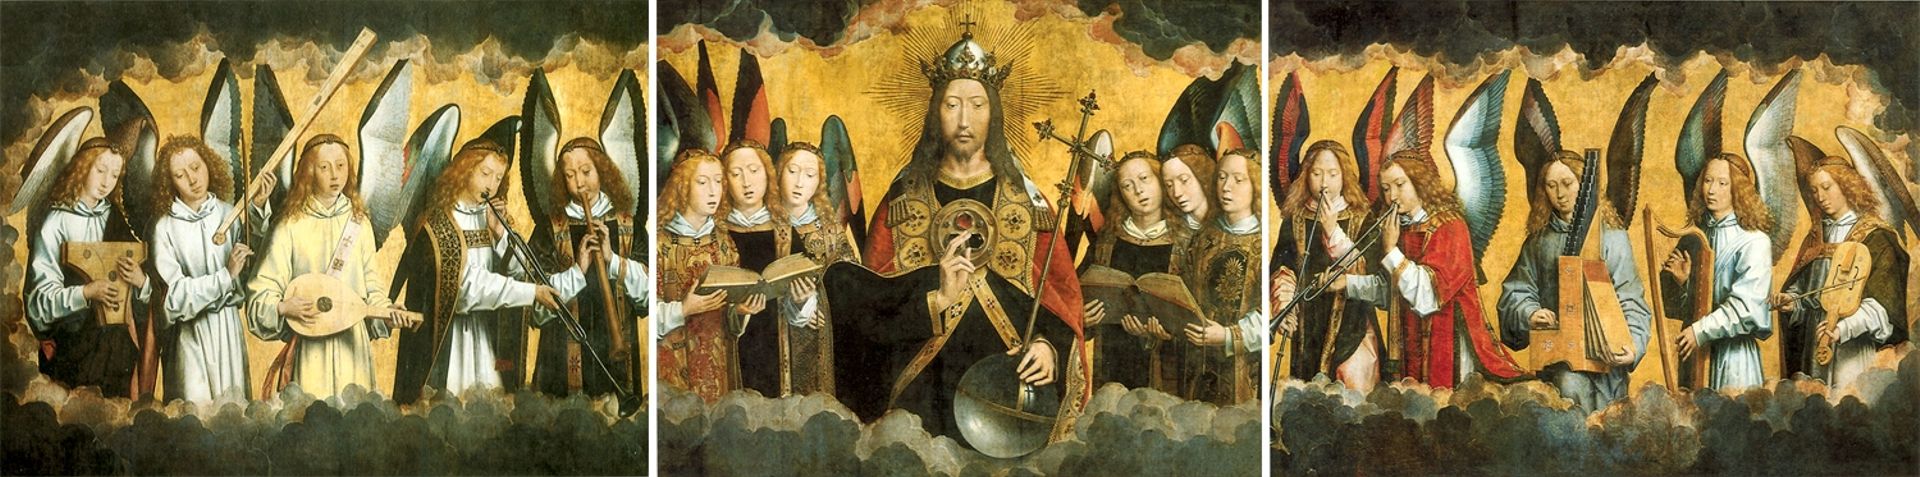 Dieu le Père entouré d’anges chanteurs et musiciens d’Hans Memling, fin du XVe siècle, Musée Royal des Beaux-Arts d’Anvers